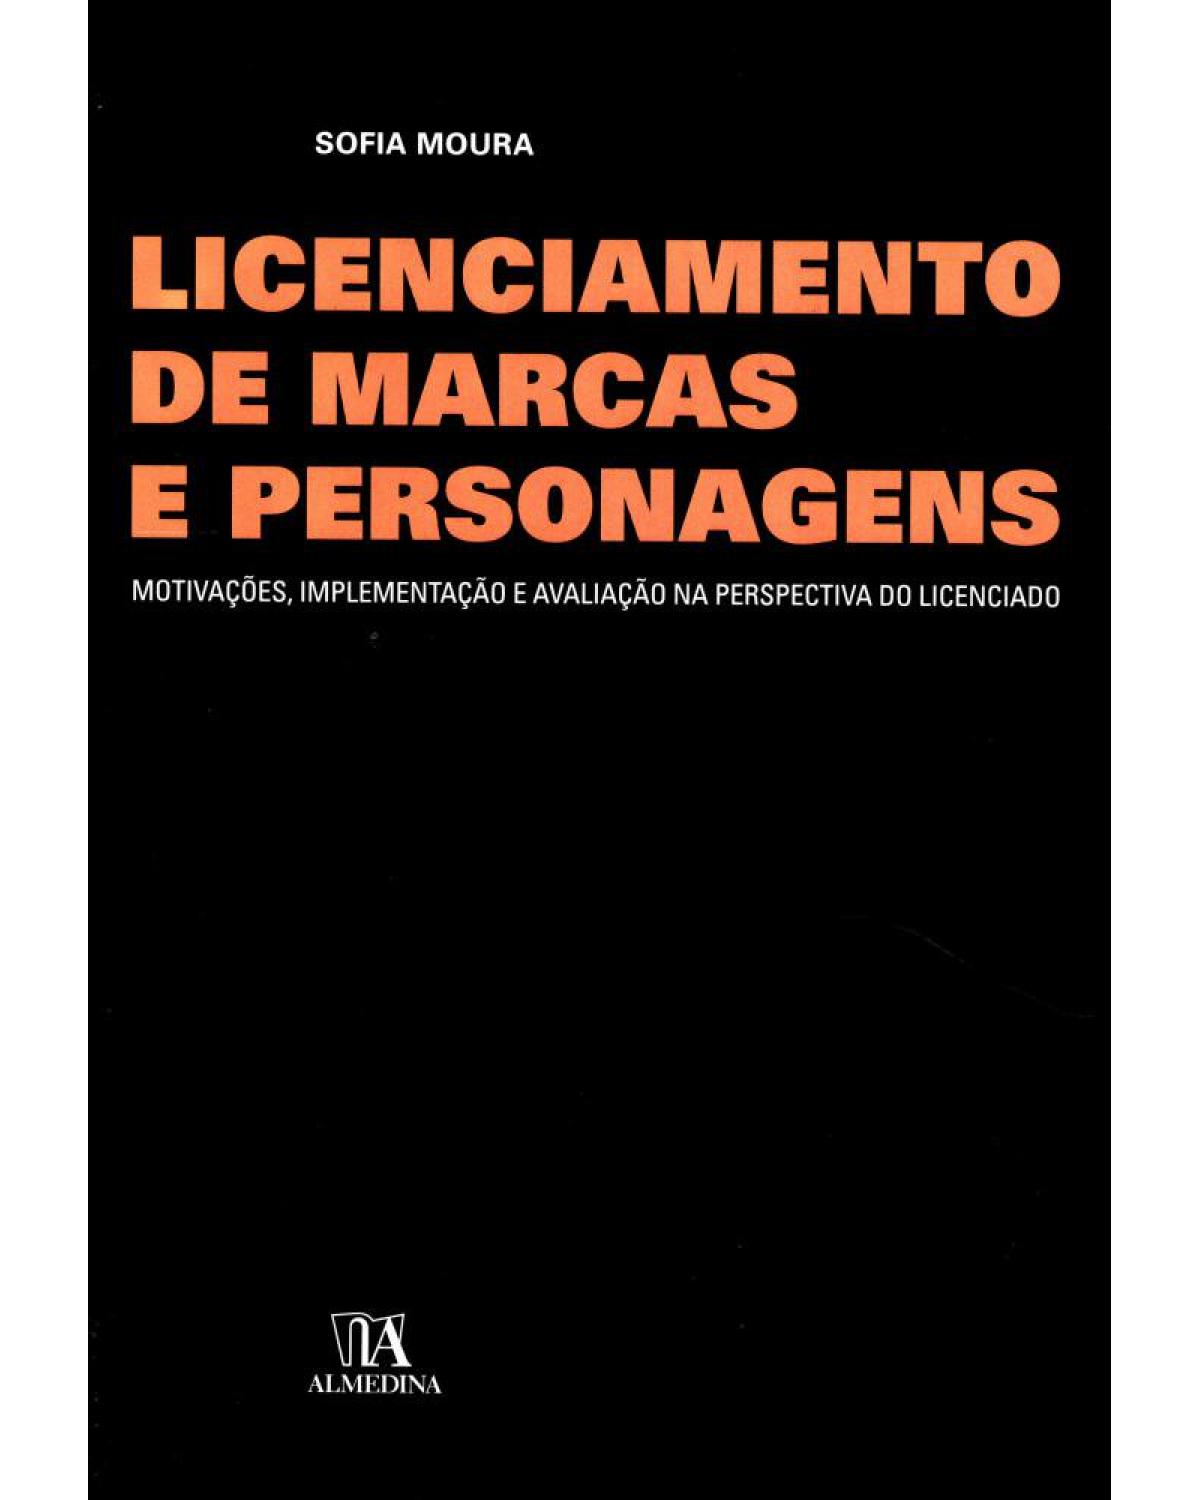 Licenciamento de marcas e personagens - motivações, implementação e avaliação na perspectiva do licenciado - 1ª Edição | 2006